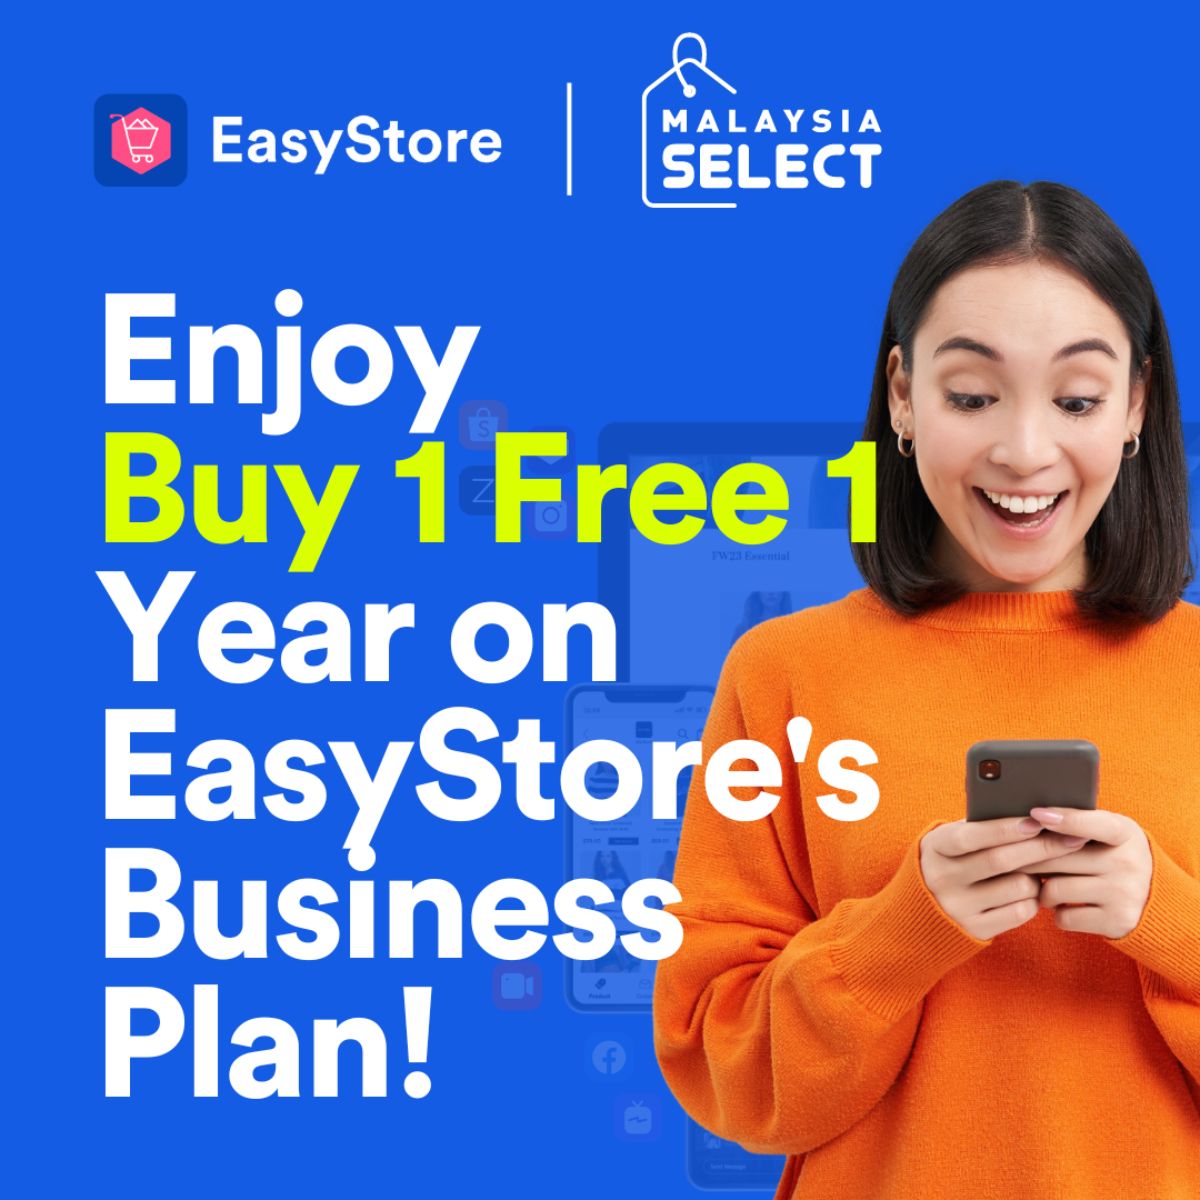  EasyStore B1F1 Promo  | EasyStore